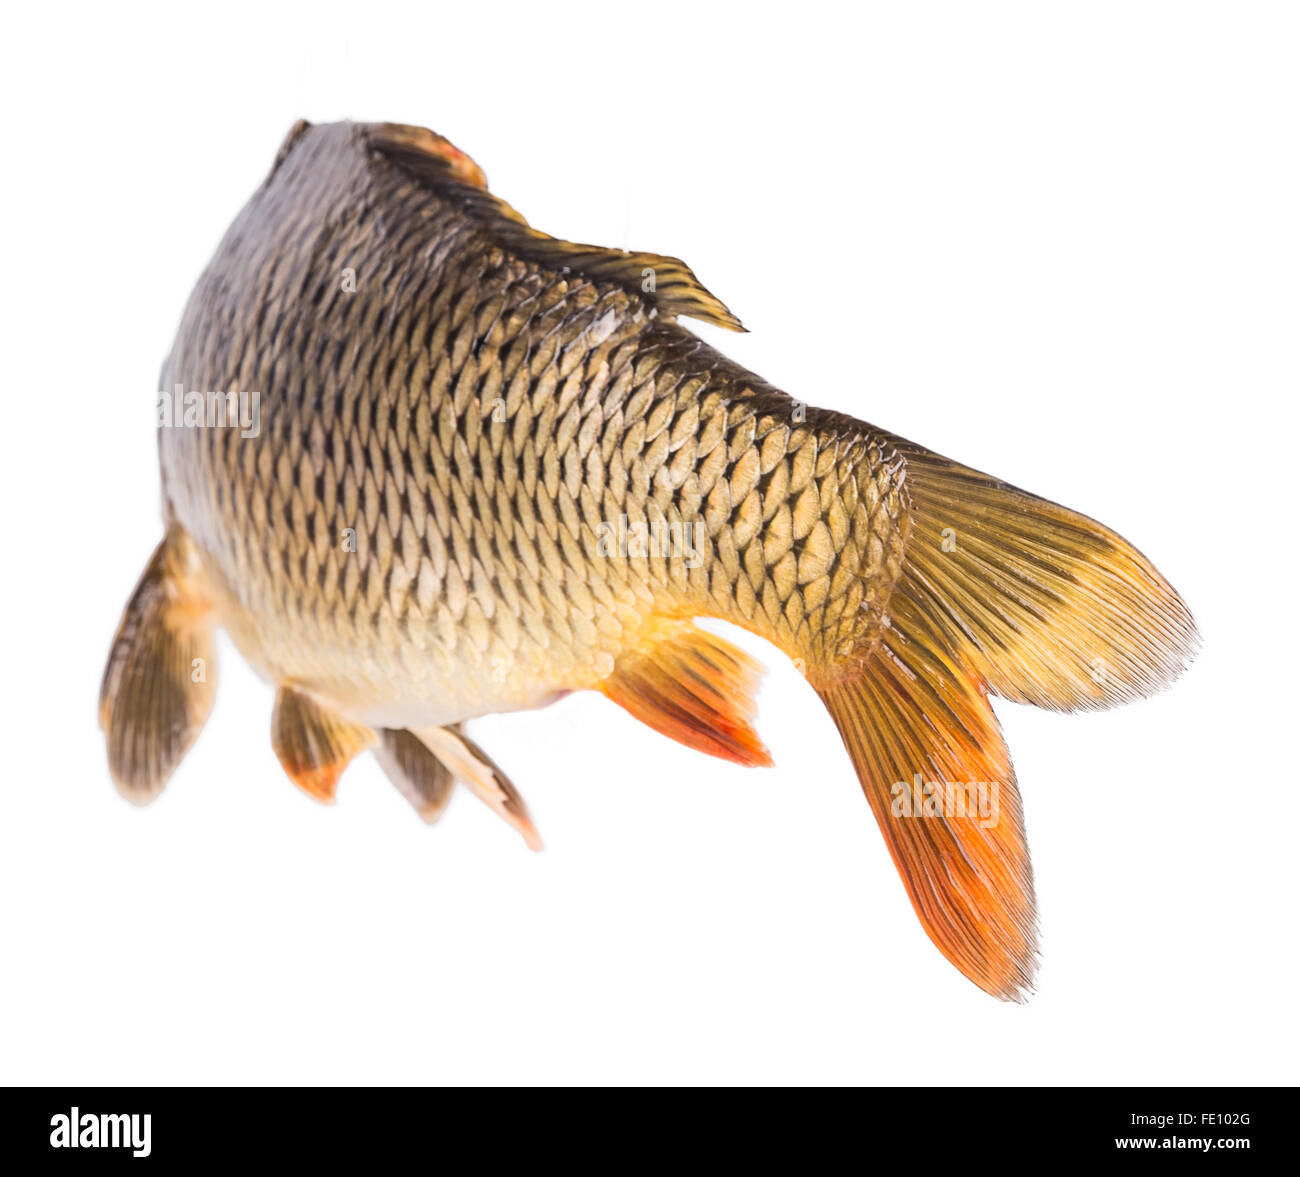 Carp Fish Half-face Isolated on White Background Stock Image